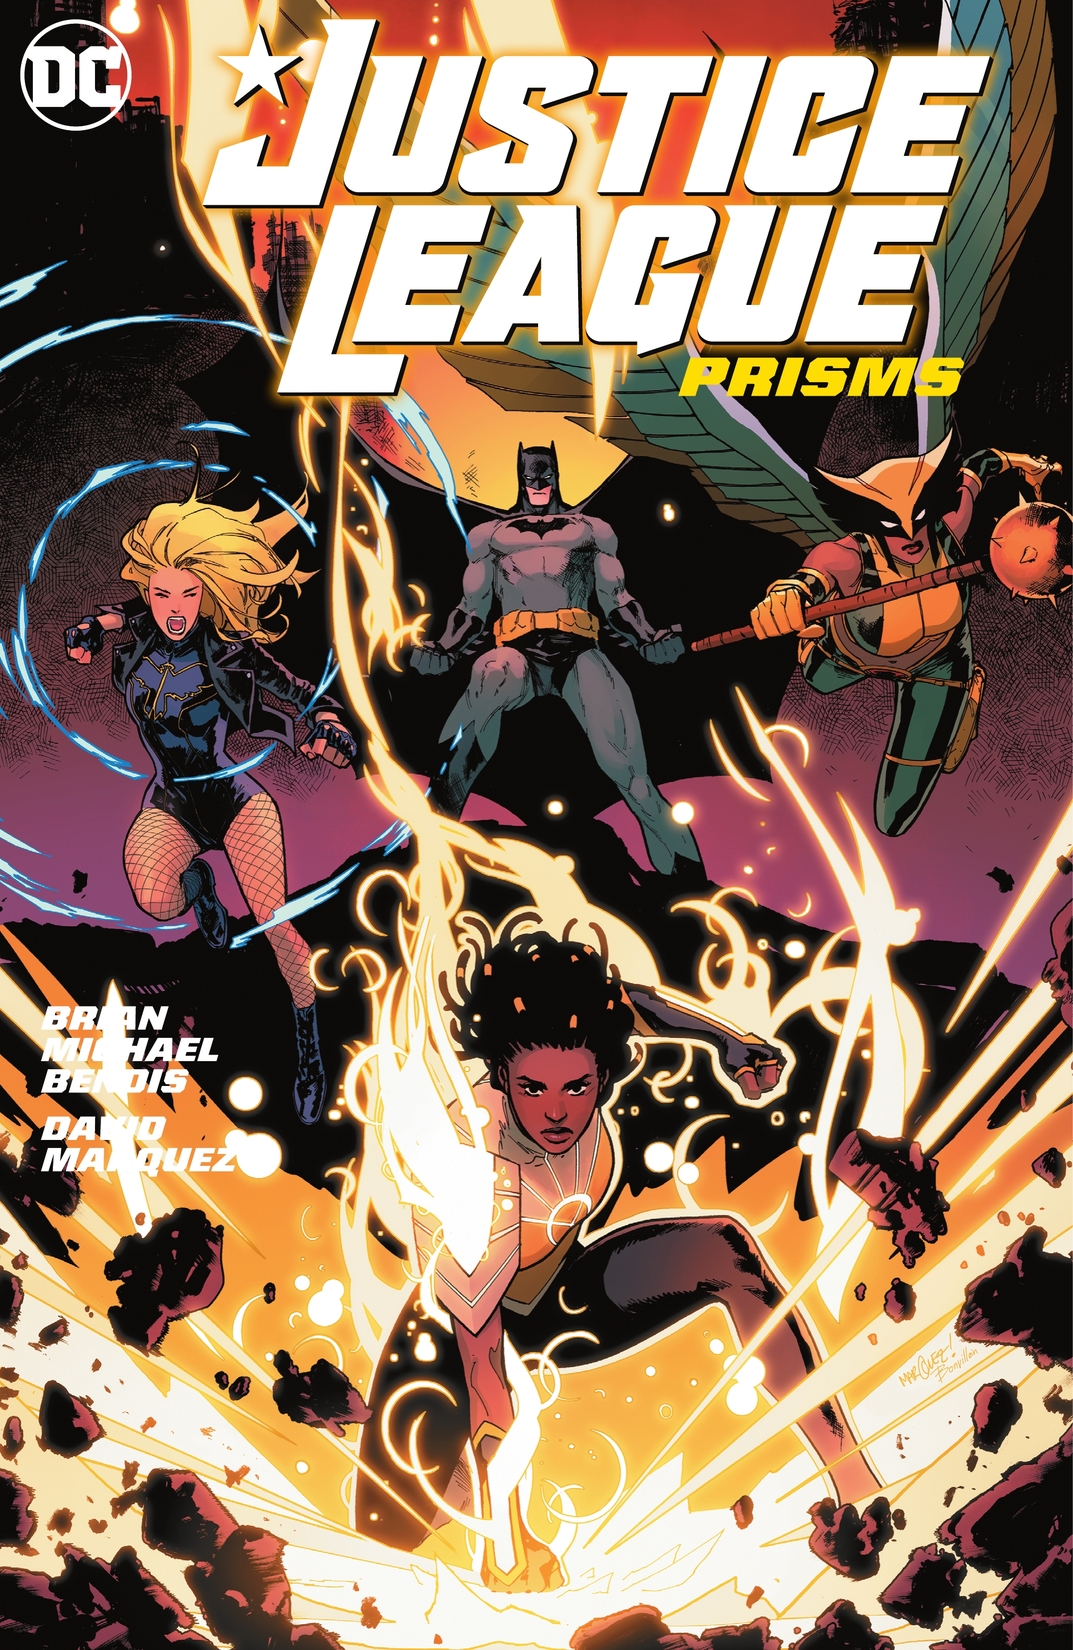 Justice League Vol. 1: Prisms preview images